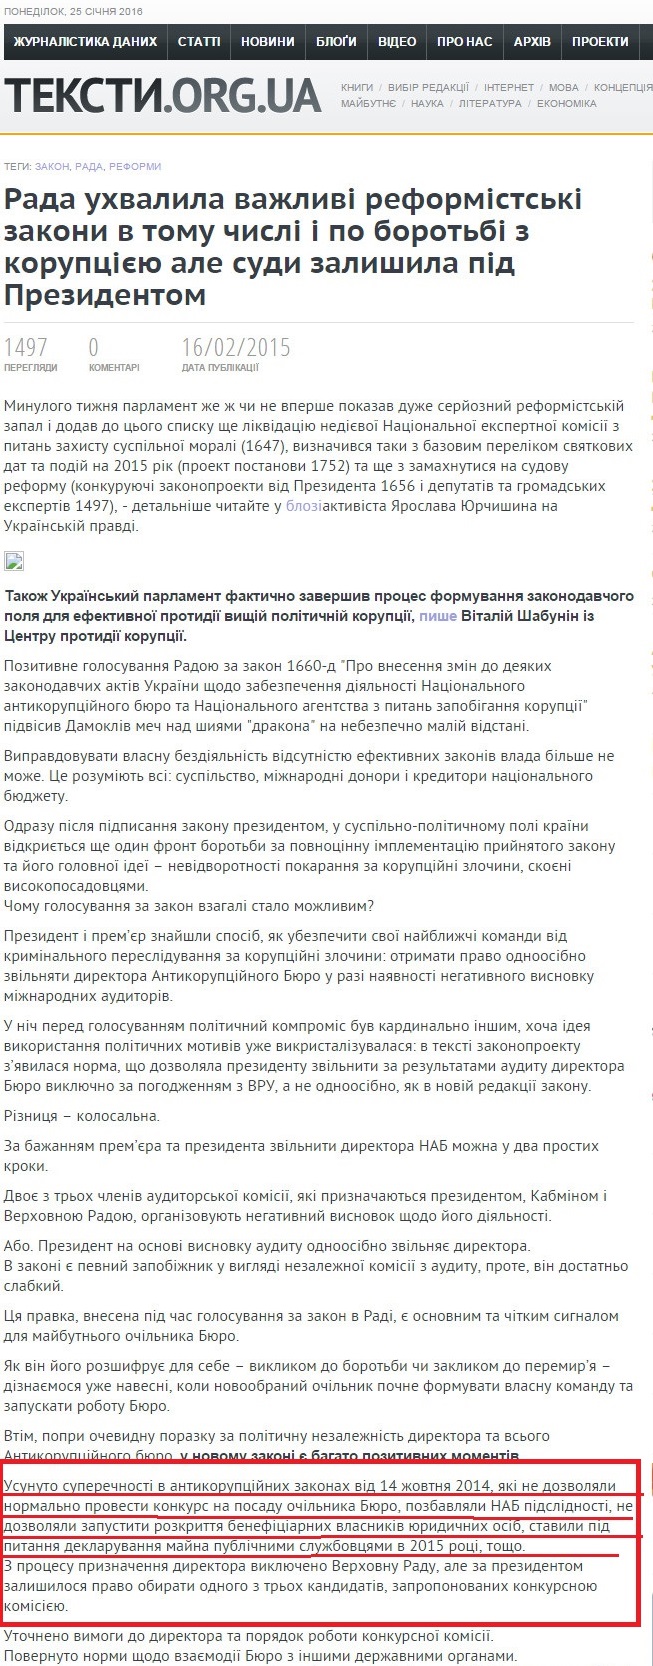 http://texty.org.ua/pg/news/editorial/read/58428/Rada_uhvalyla_vazhlyvi_reformistski_zakony_v_tomu 